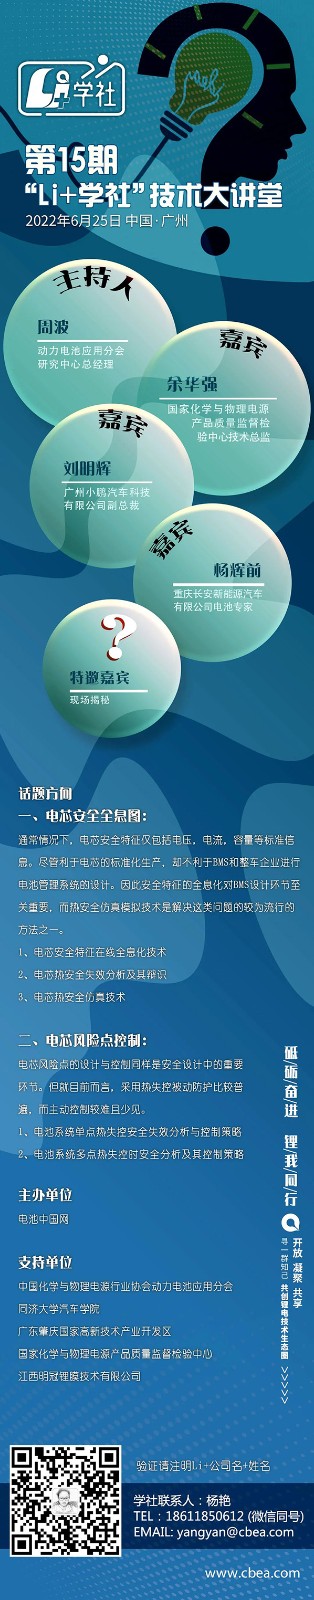 倒计时5天 | “Li+学社”技术大讲堂6月25日广州开讲！